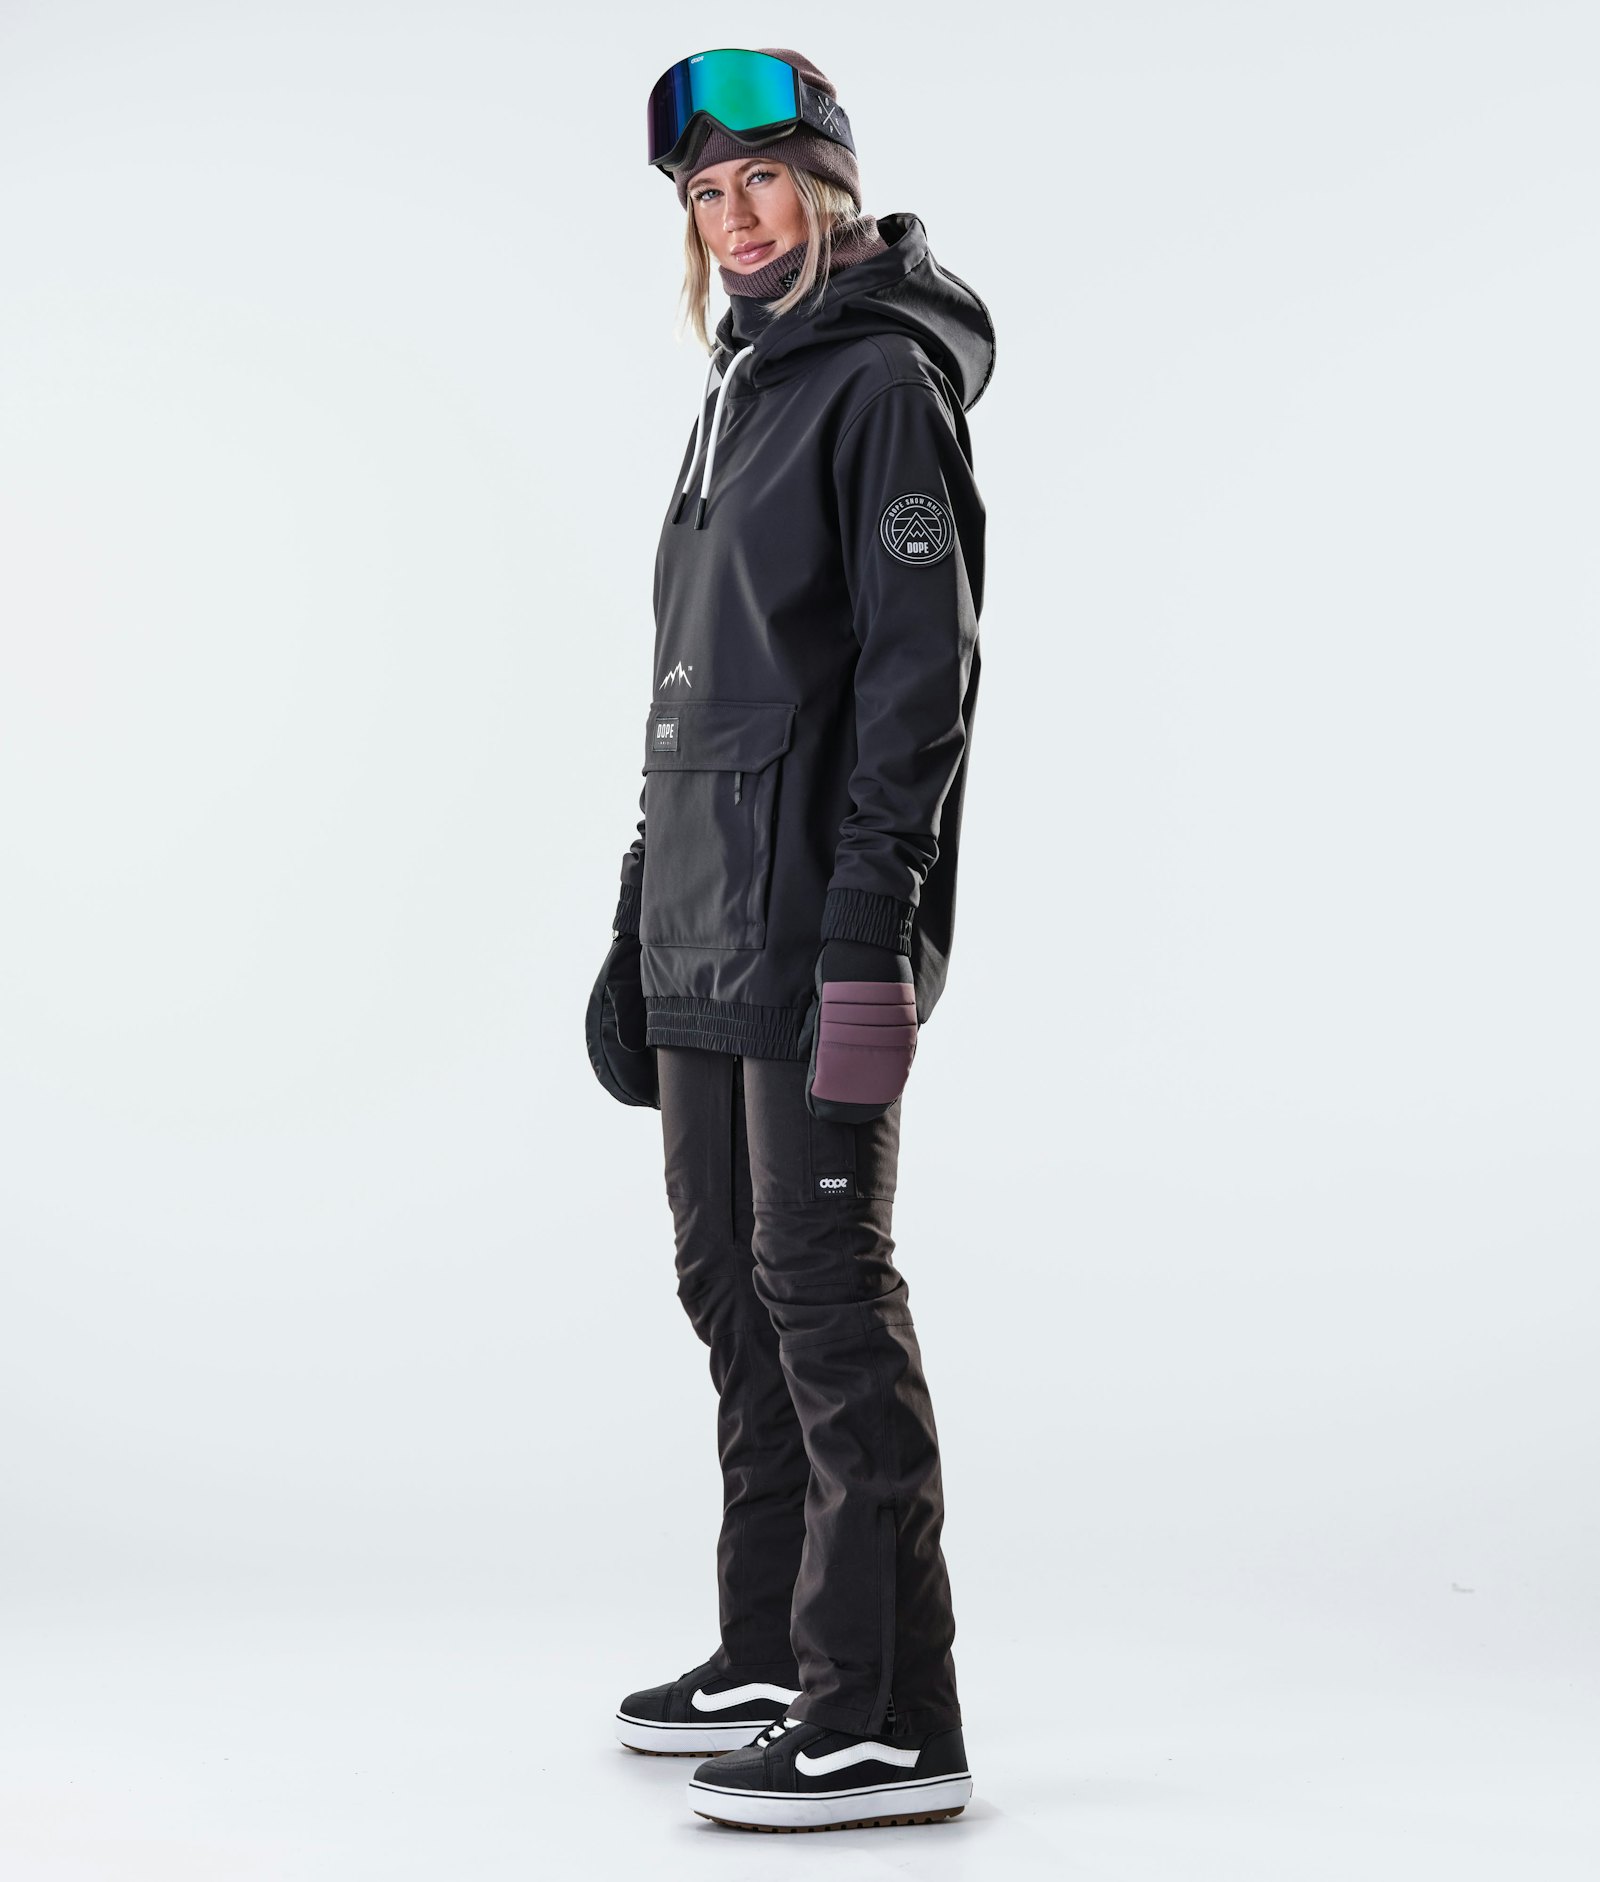 Dope Wylie W 10k Snowboard Jacket Women Patch Black